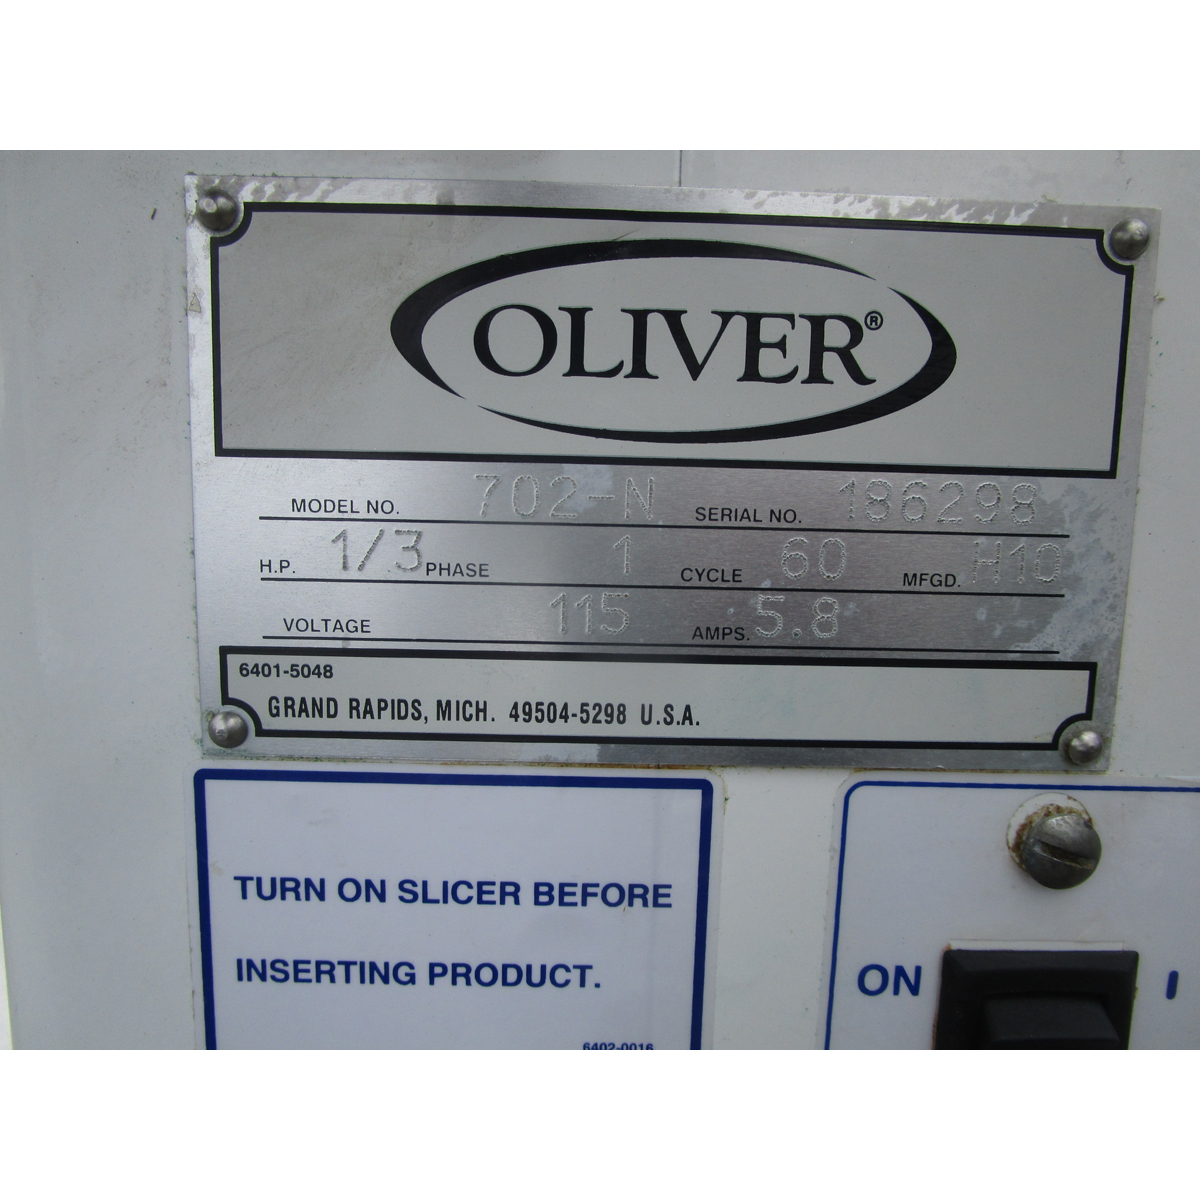 Oliver 702N Bagel Slicer with Return Slide, Used Very Good Condition image 2